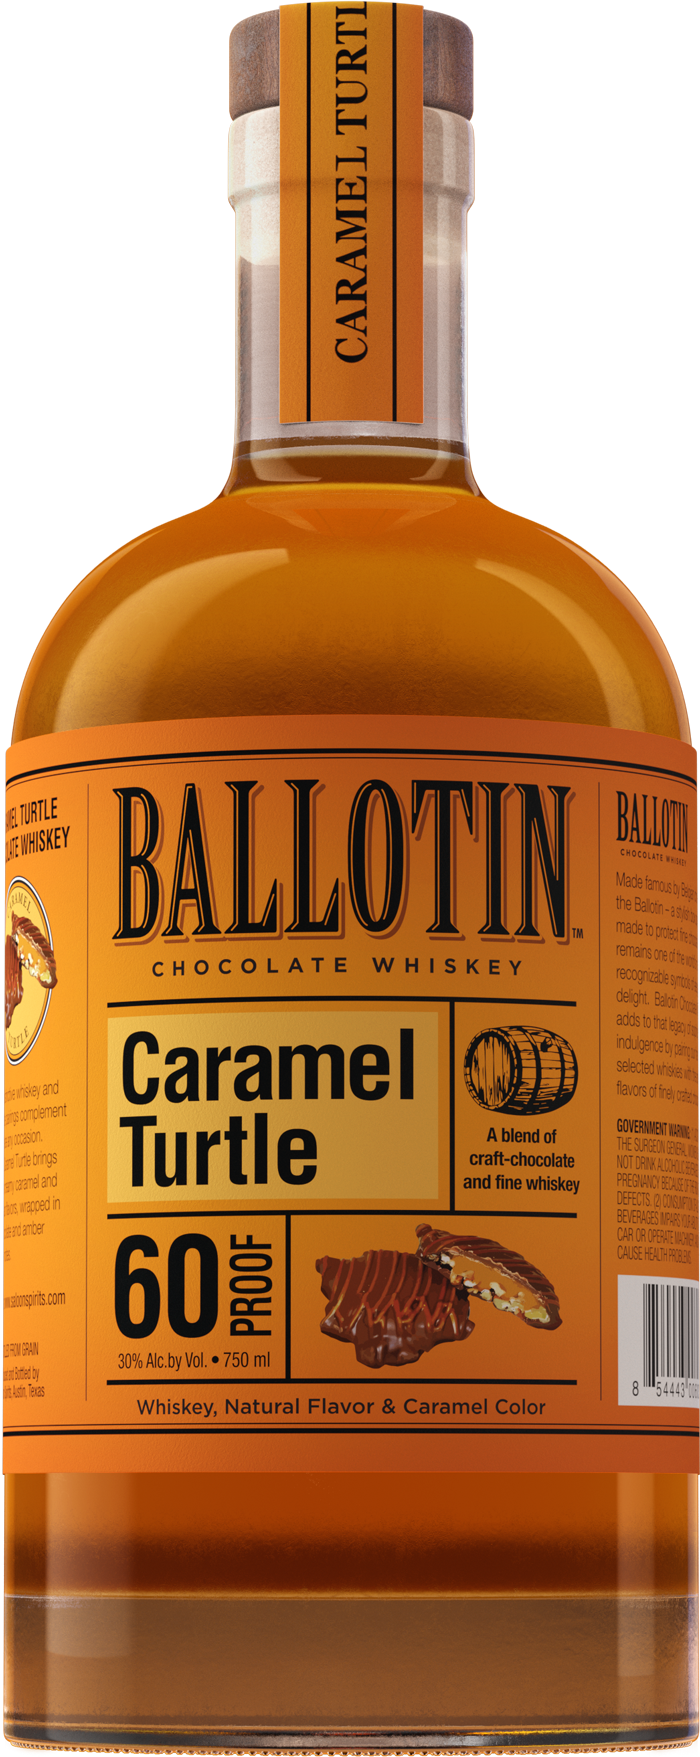 http://ballotinwhiskey.com/cdn/shop/files/Ballotin-Caramel-Turtle-750ml-Bottle-Image.png?v=1692042047